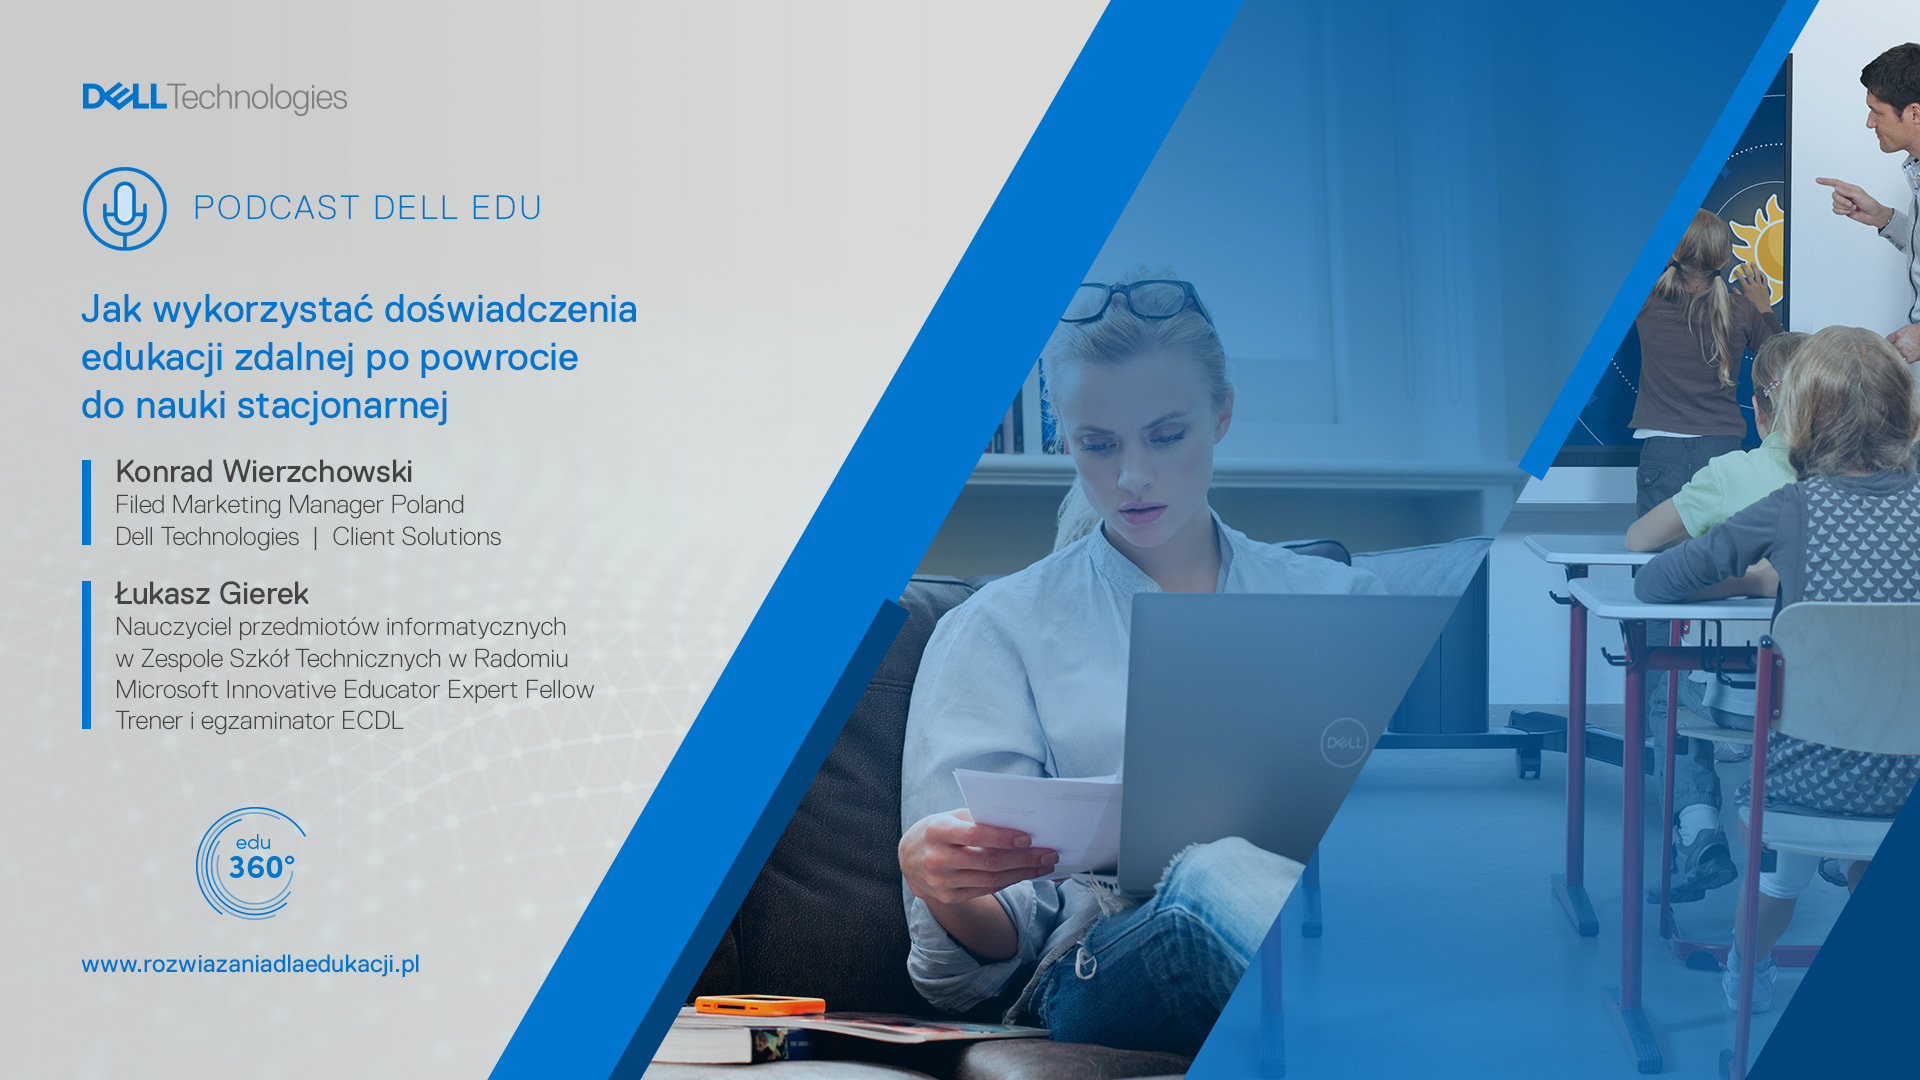 Podcast Dell EDU 360: Jak wykorzystać doświadczenia edukacji zdalnej po powrocie do nauki stacjonarnej